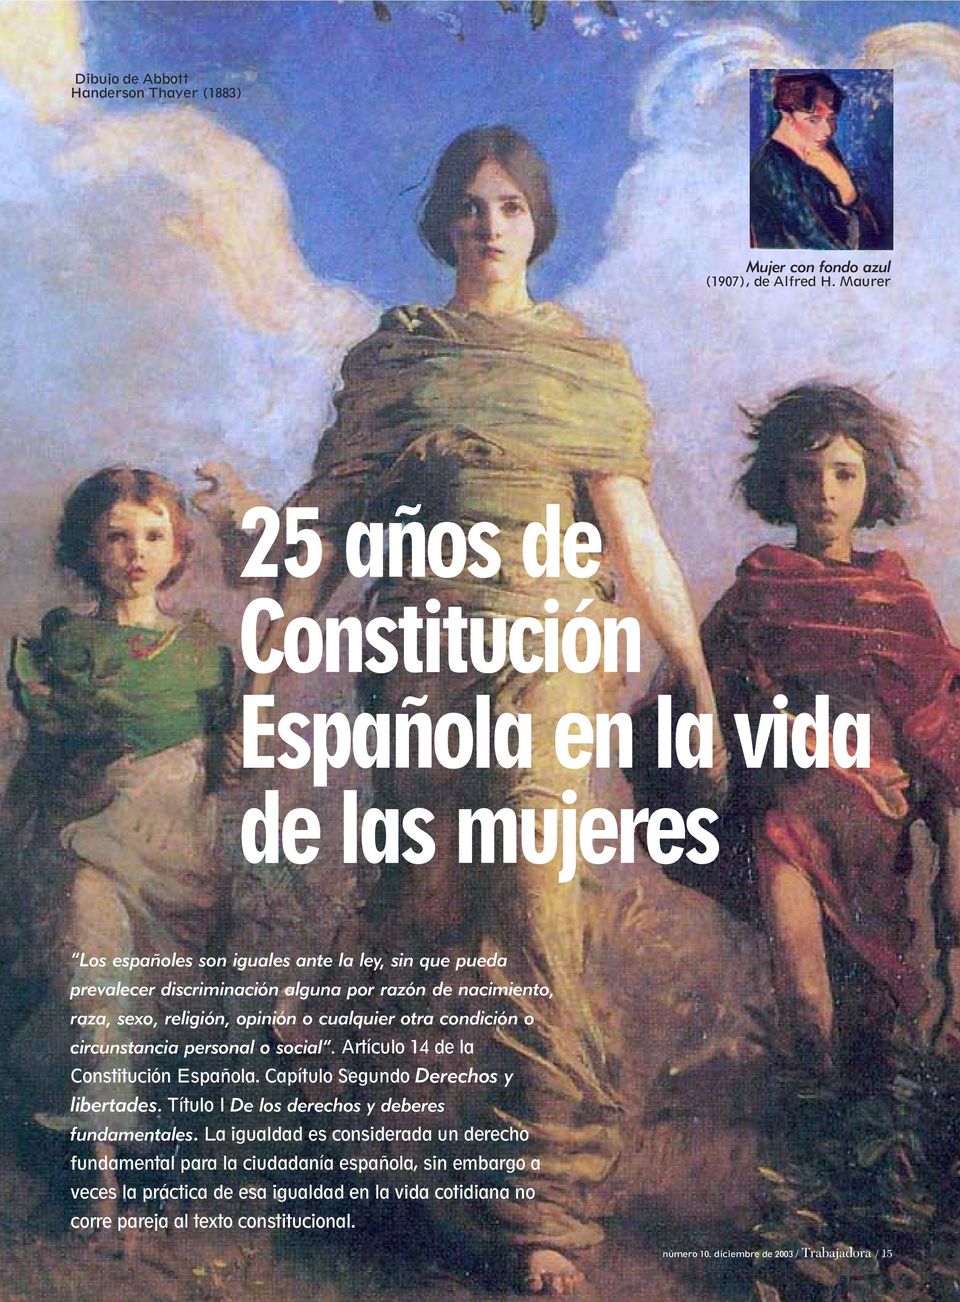 raza, sexo, religión, opinión o cualquier otra condición o circunstancia personal o social. Artículo 14 de la Constitución Española. Capítulo Segundo Derechos y libertades.